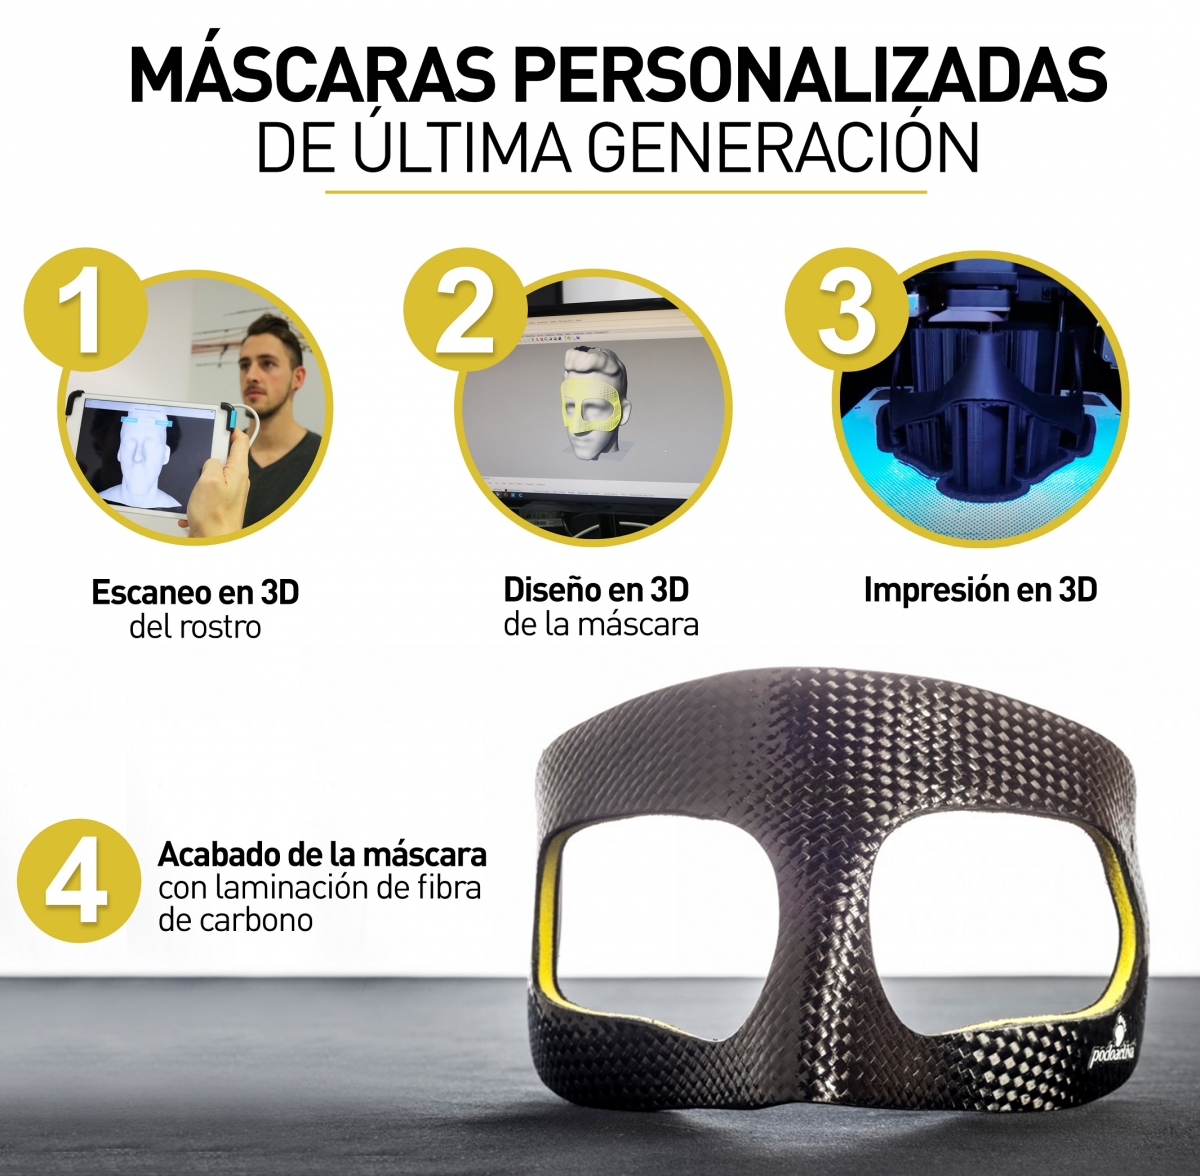 Podoactiva crea la máscara protectora de Godín - Podoactiva. Líderes en  Podología